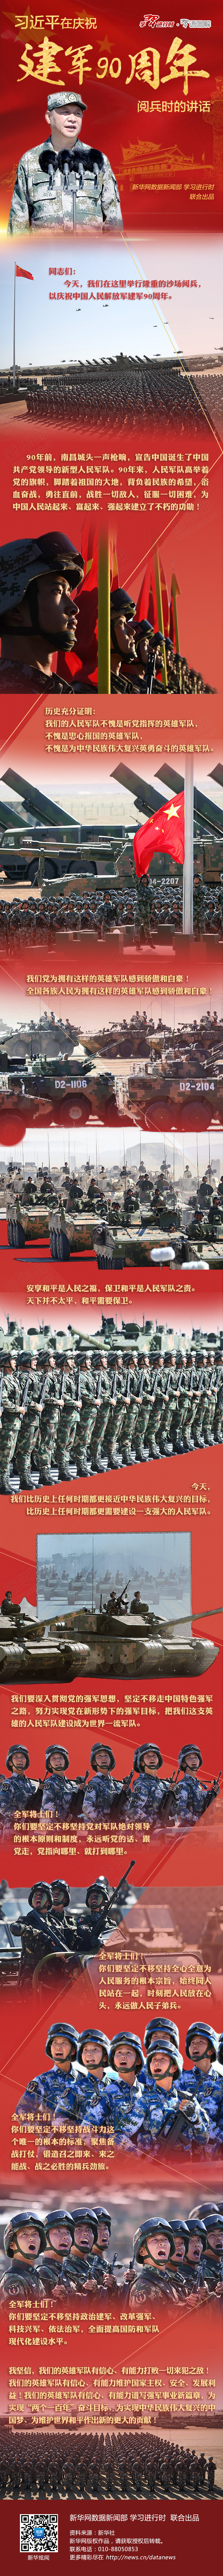 习语图解：习近平在庆祝建军90周年阅兵时的讲话